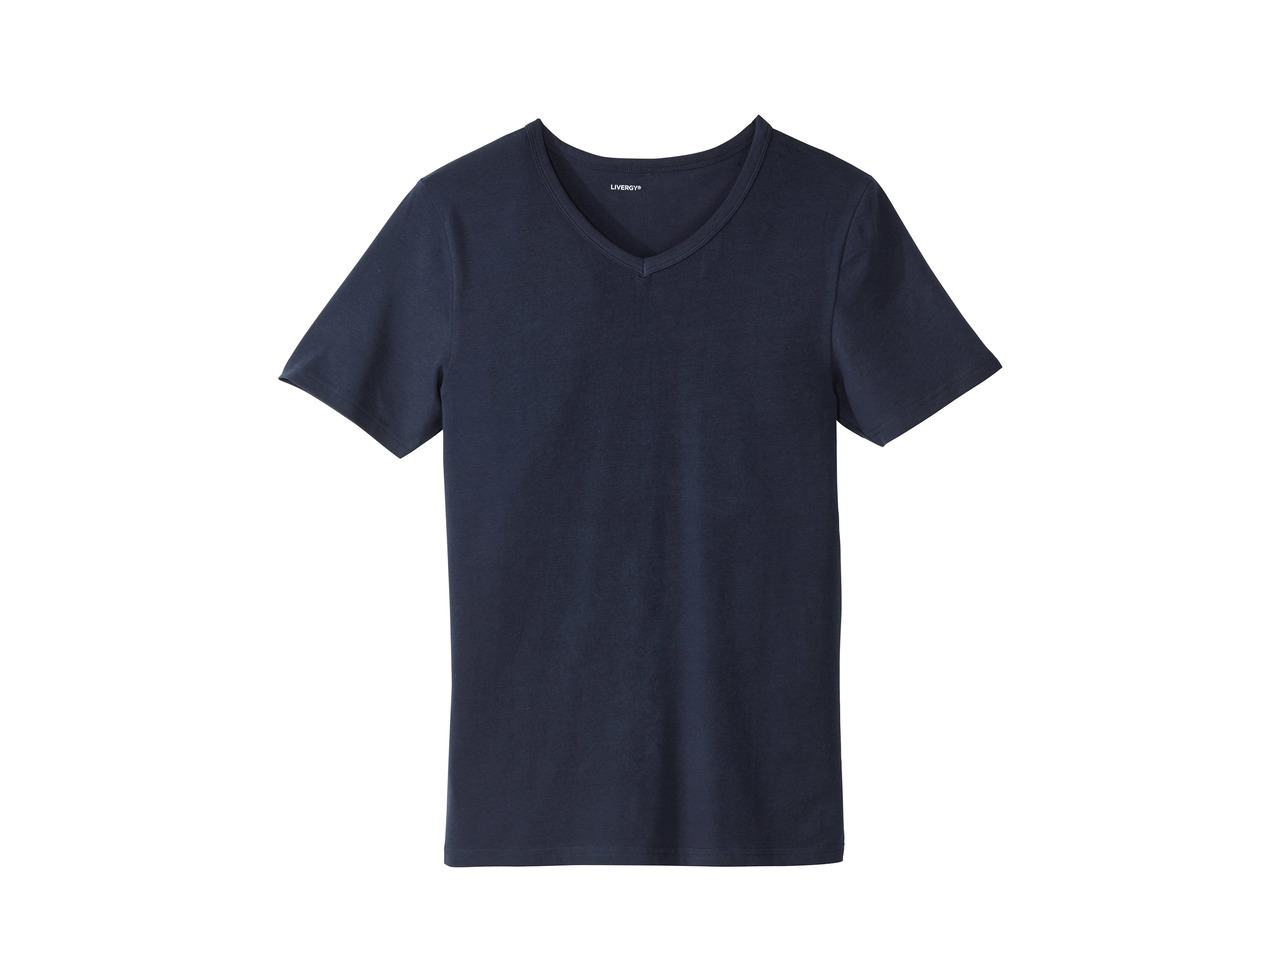 Livergy Men's T-Shirt1